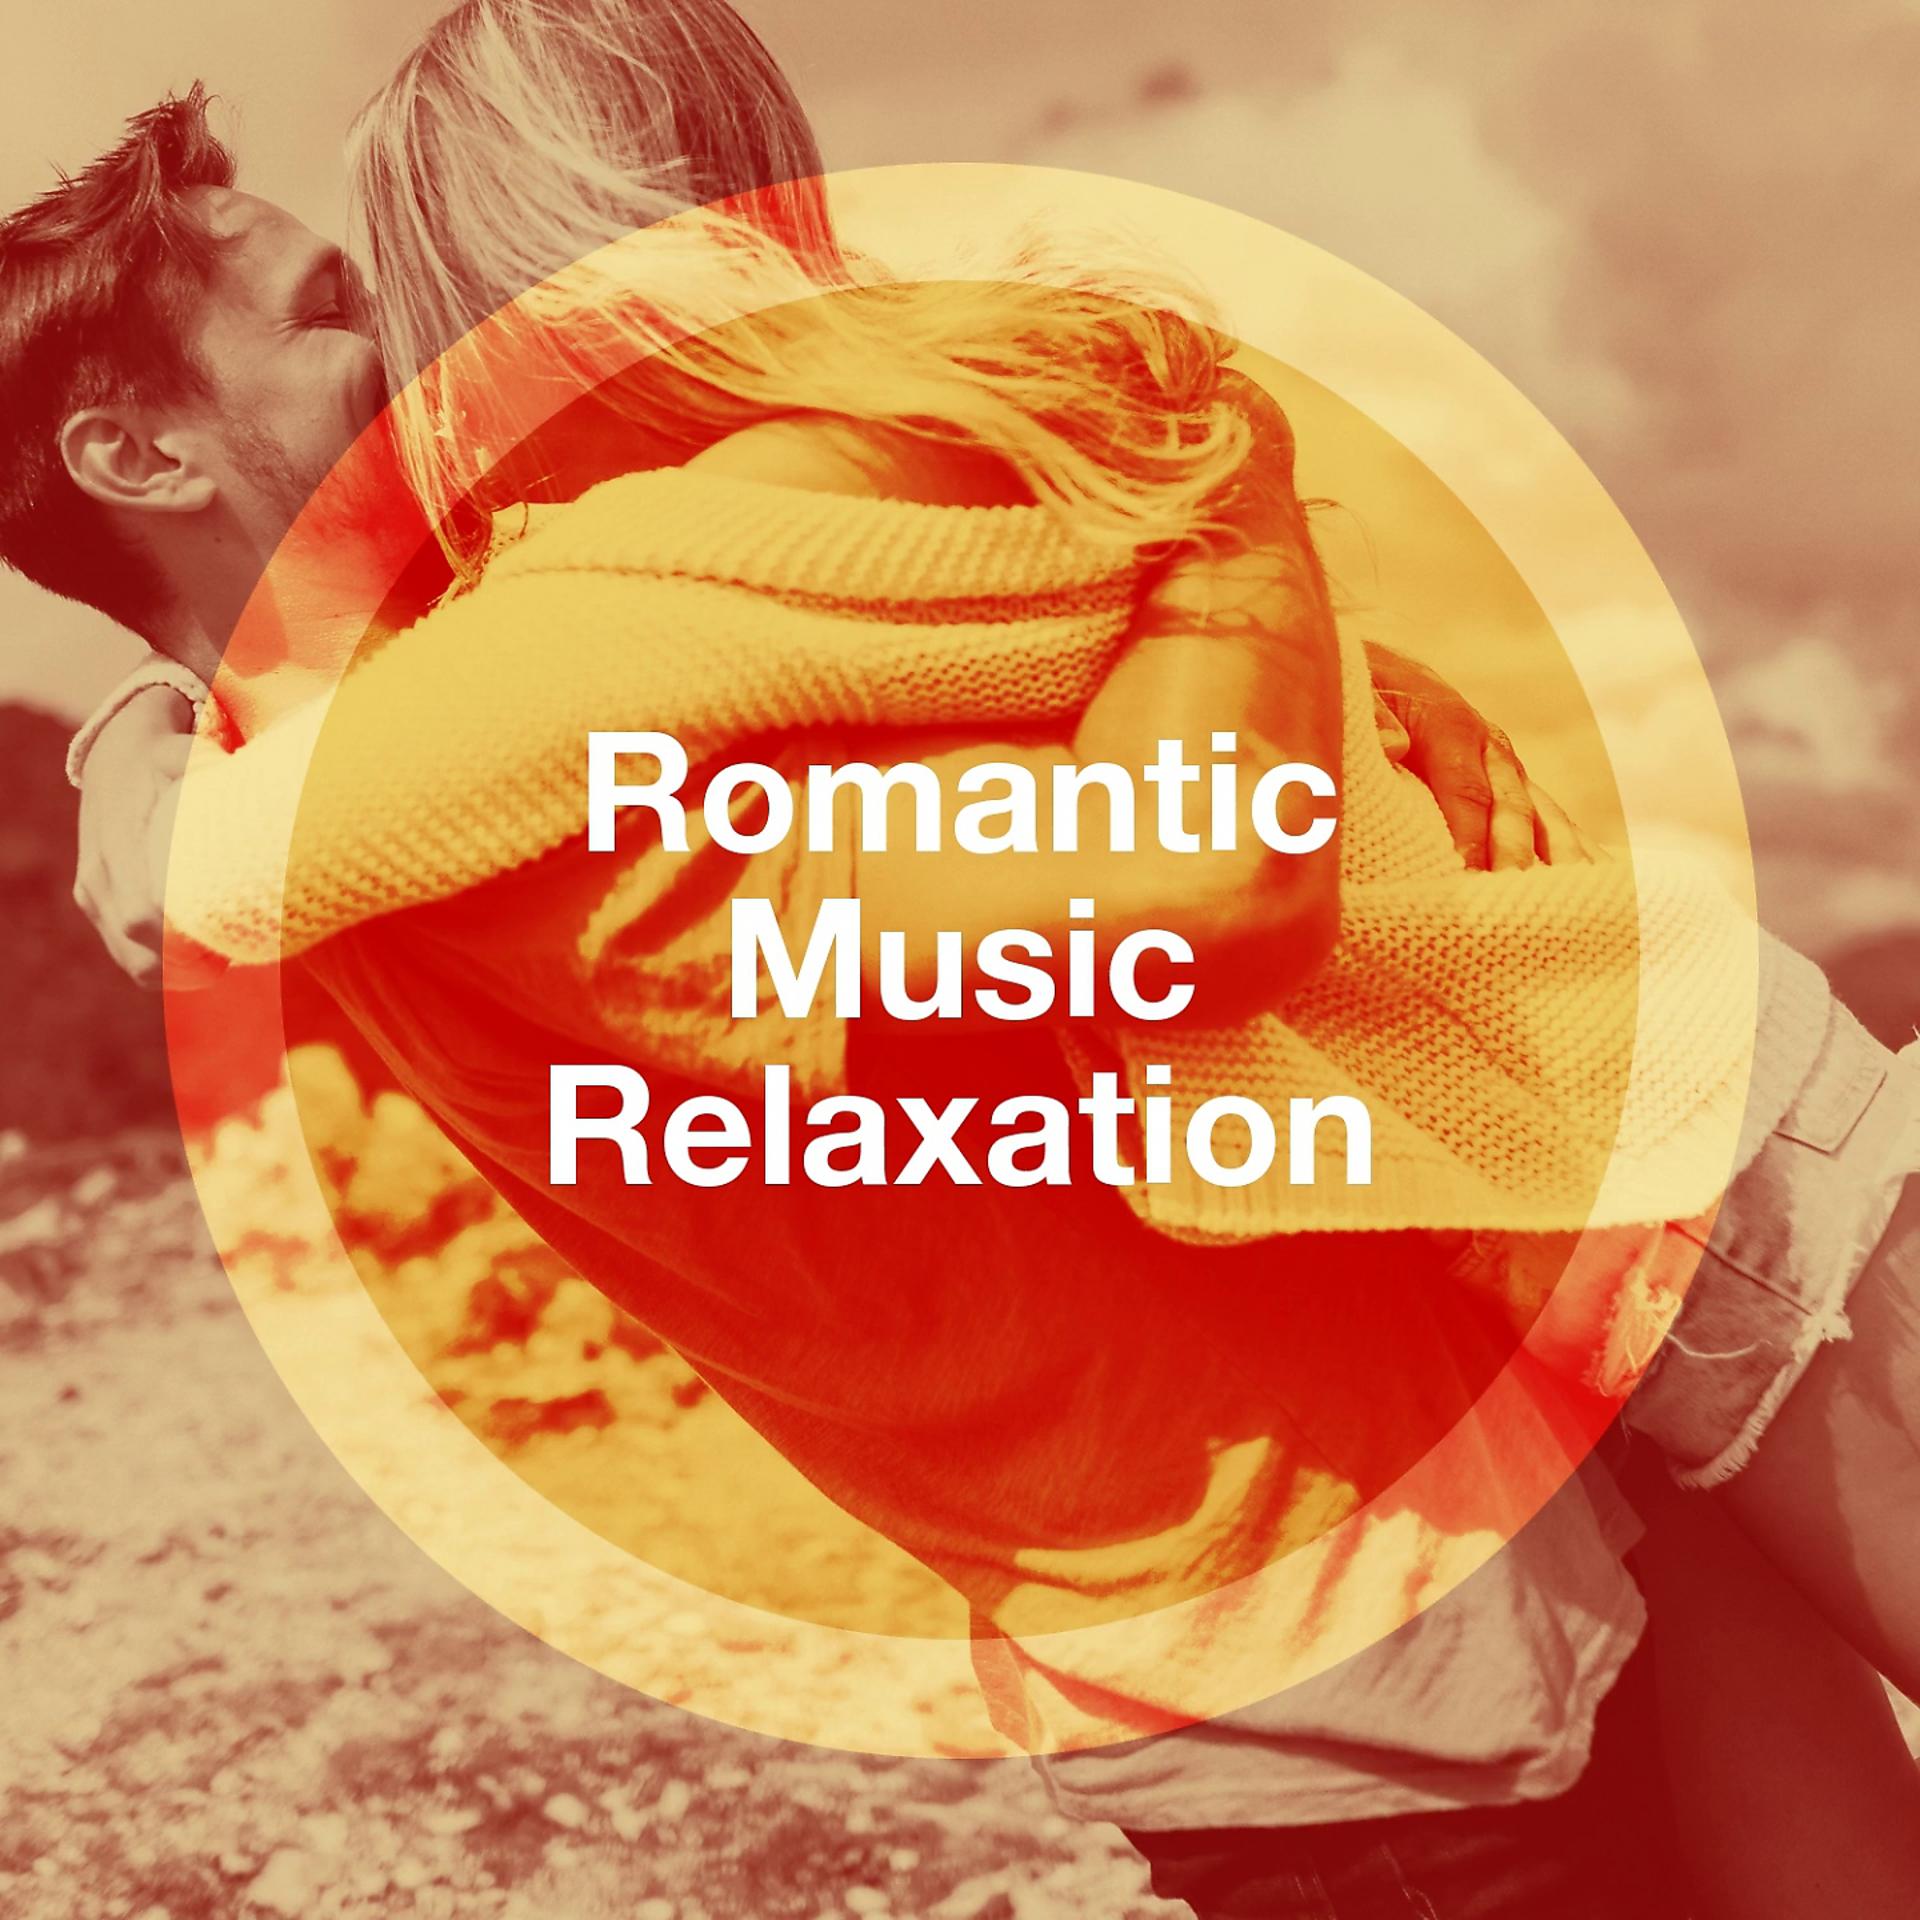 Romance music